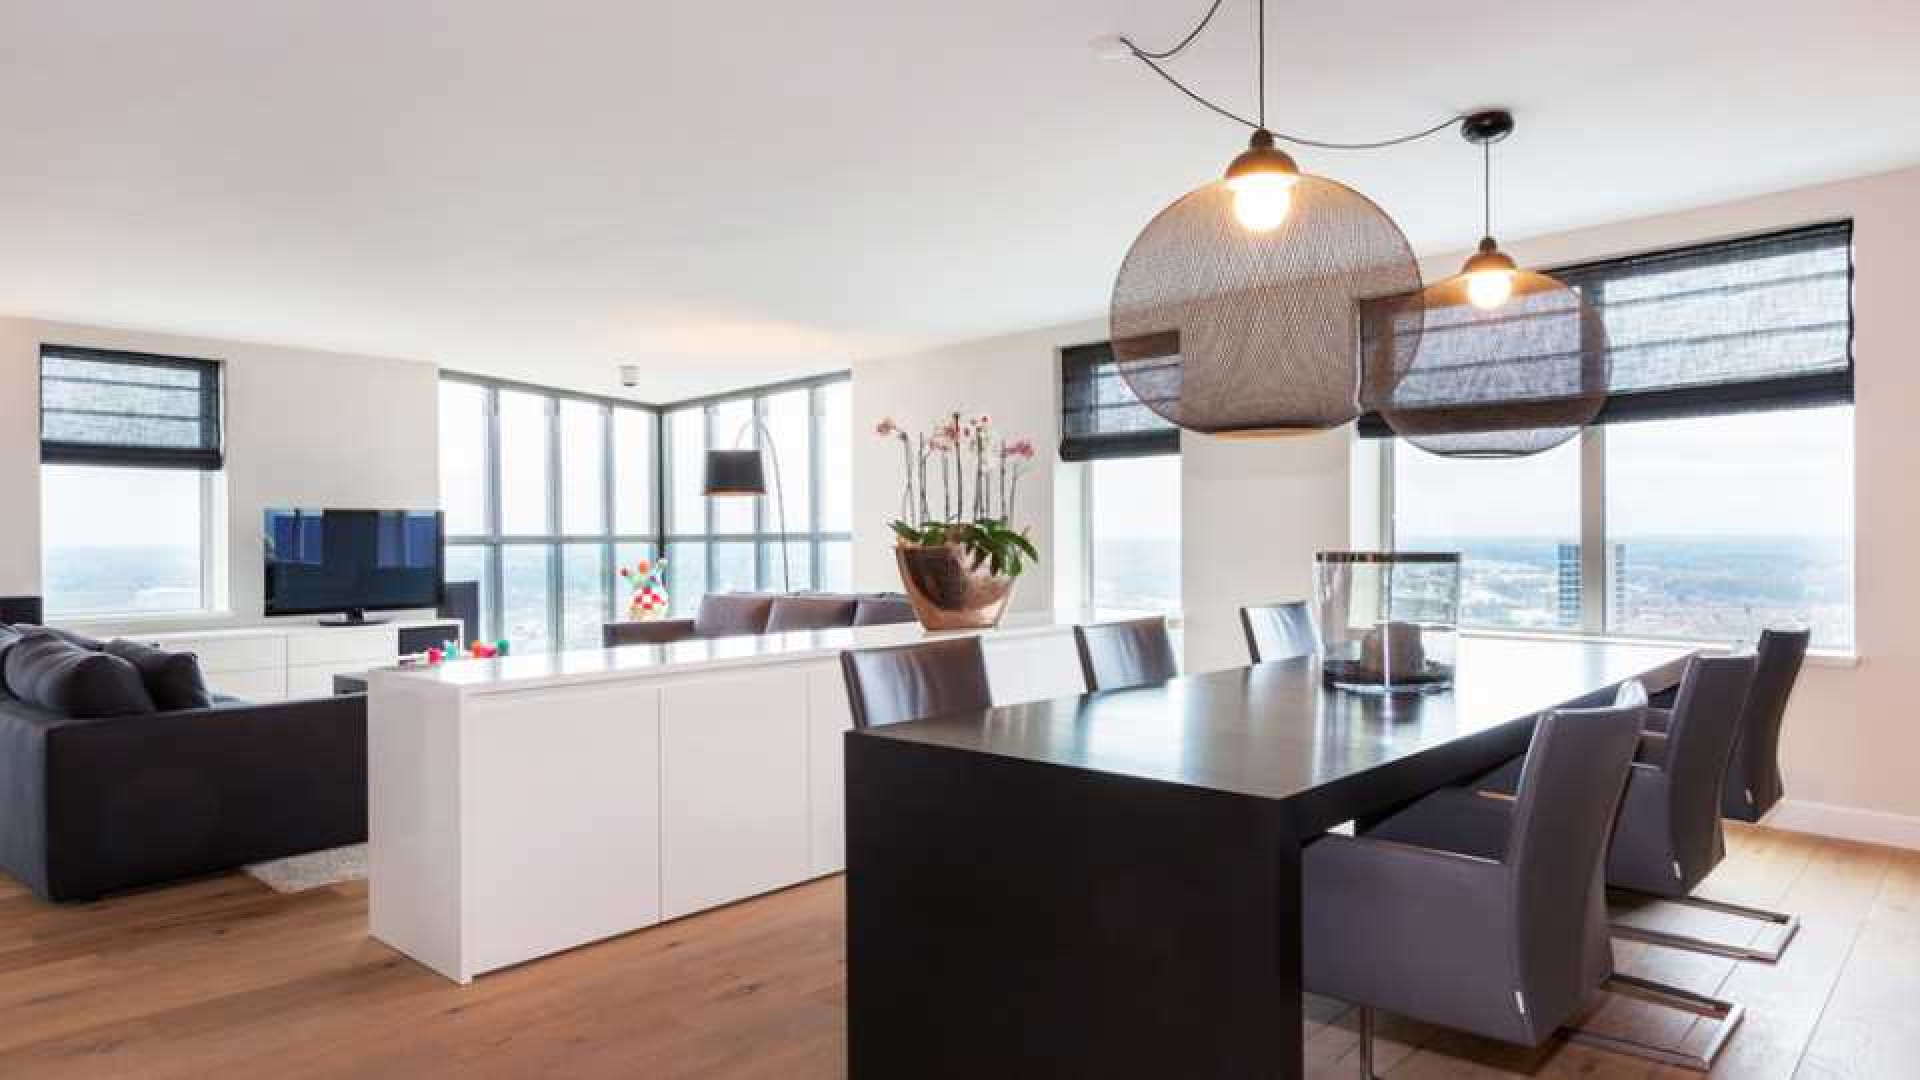 Amanda Krabbe en vriend Harrie Kolen kopen waanzinnig luxe penthouse in Eindhoven. Zie foto's 6